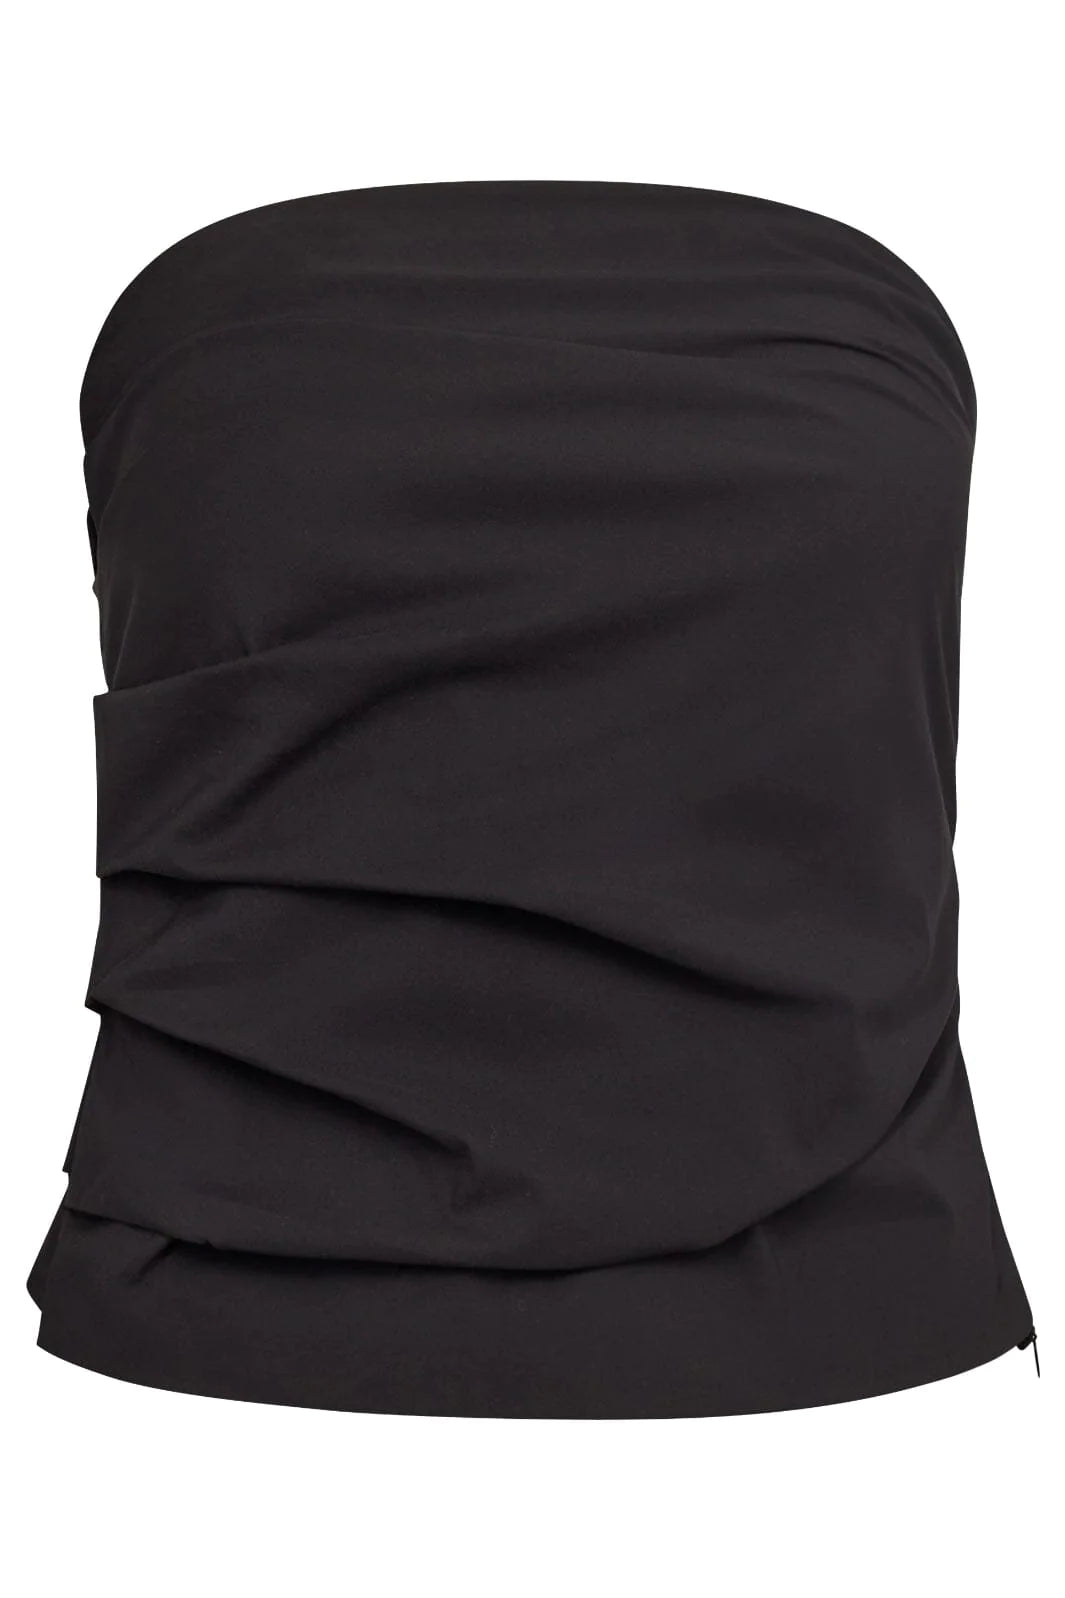 Co'couture | CottonCC Crisp Strapless Top - Black